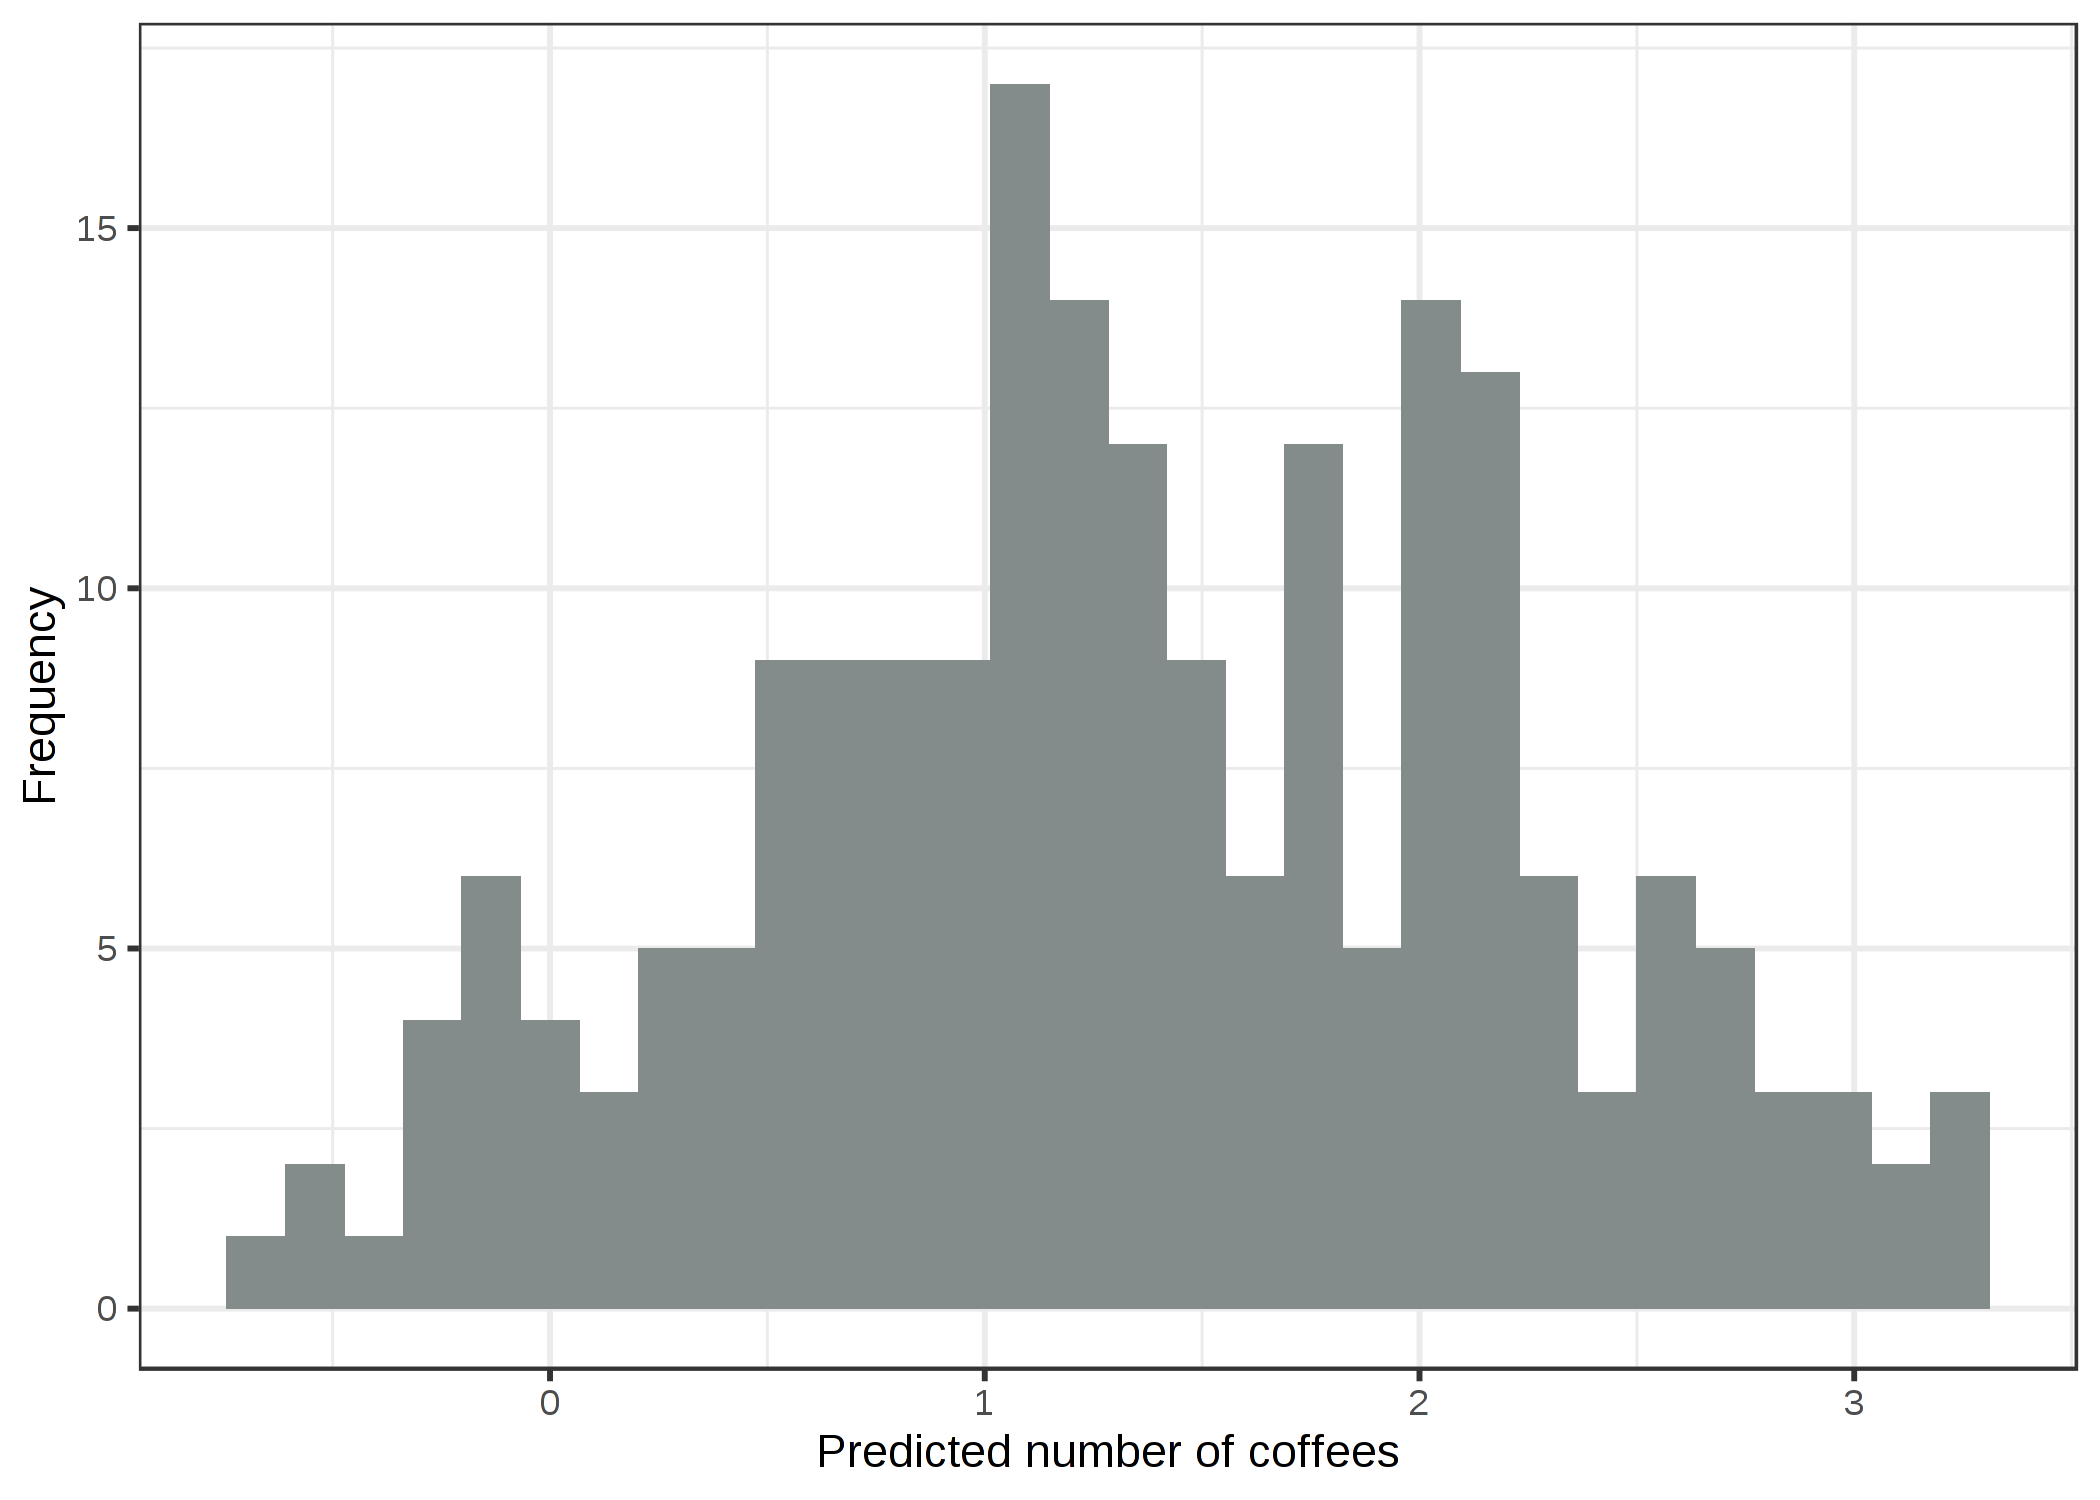 ストレス、睡眠、仕事に応じて予測されたコーヒーを飲む量の予測値。線形モデルは負の値を予測しています。